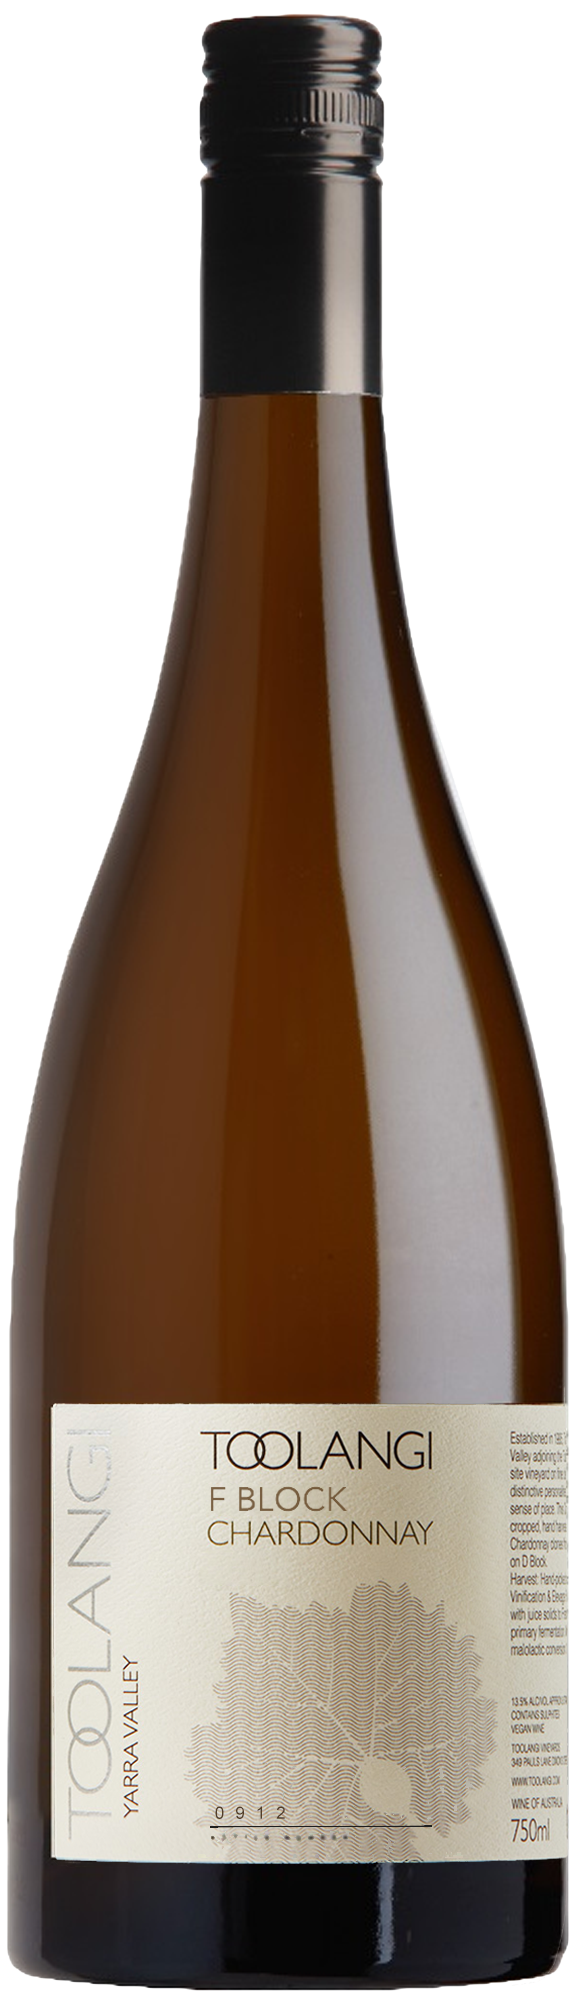 Toolangi Vineyard F Block Chardonnay 2020